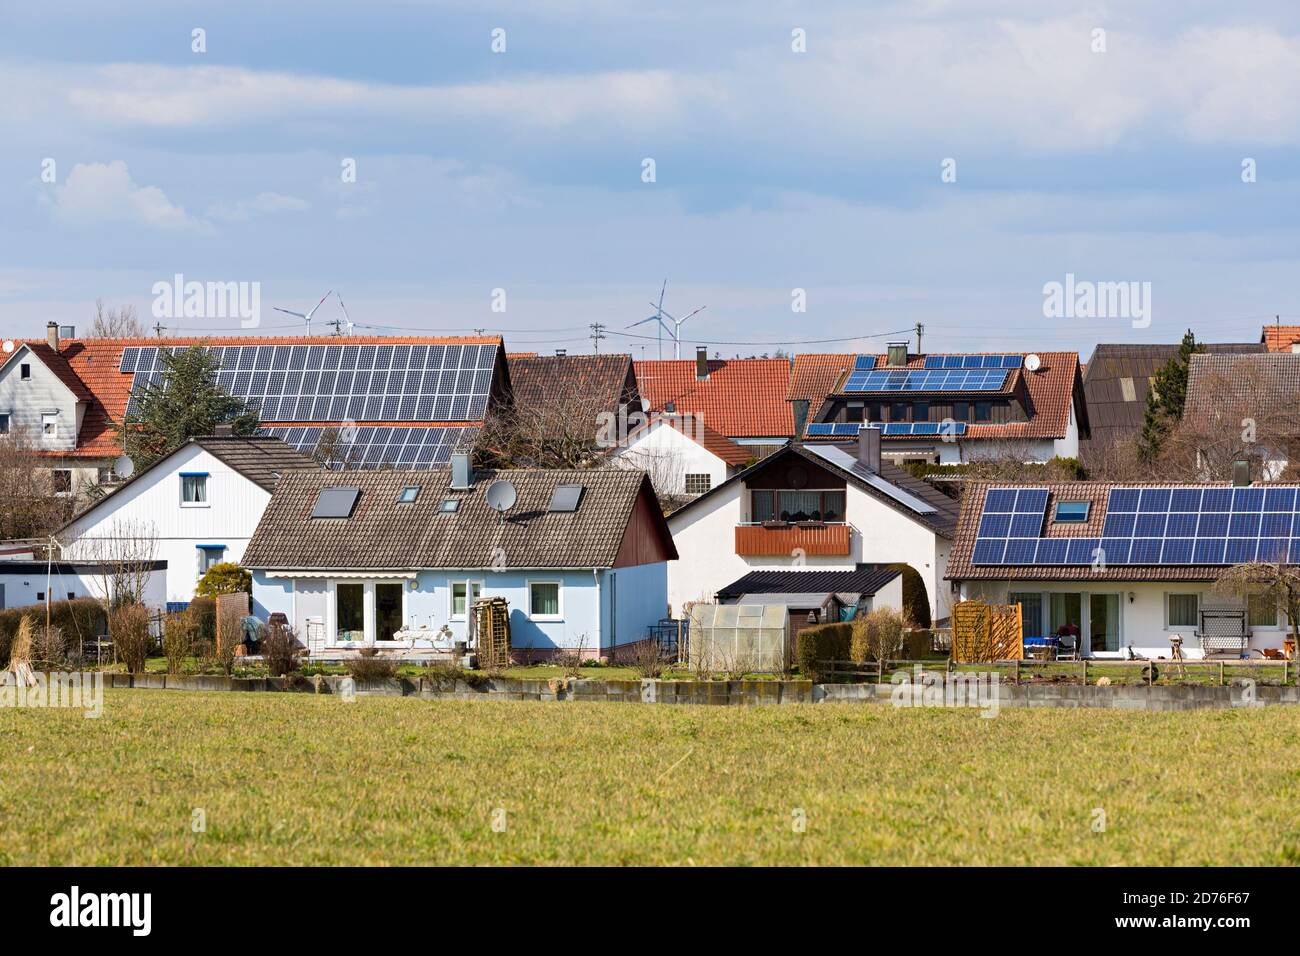 Regenerativo Energien, Wohnsiedlung, Windkraftanlage, Solardach Foto de stock